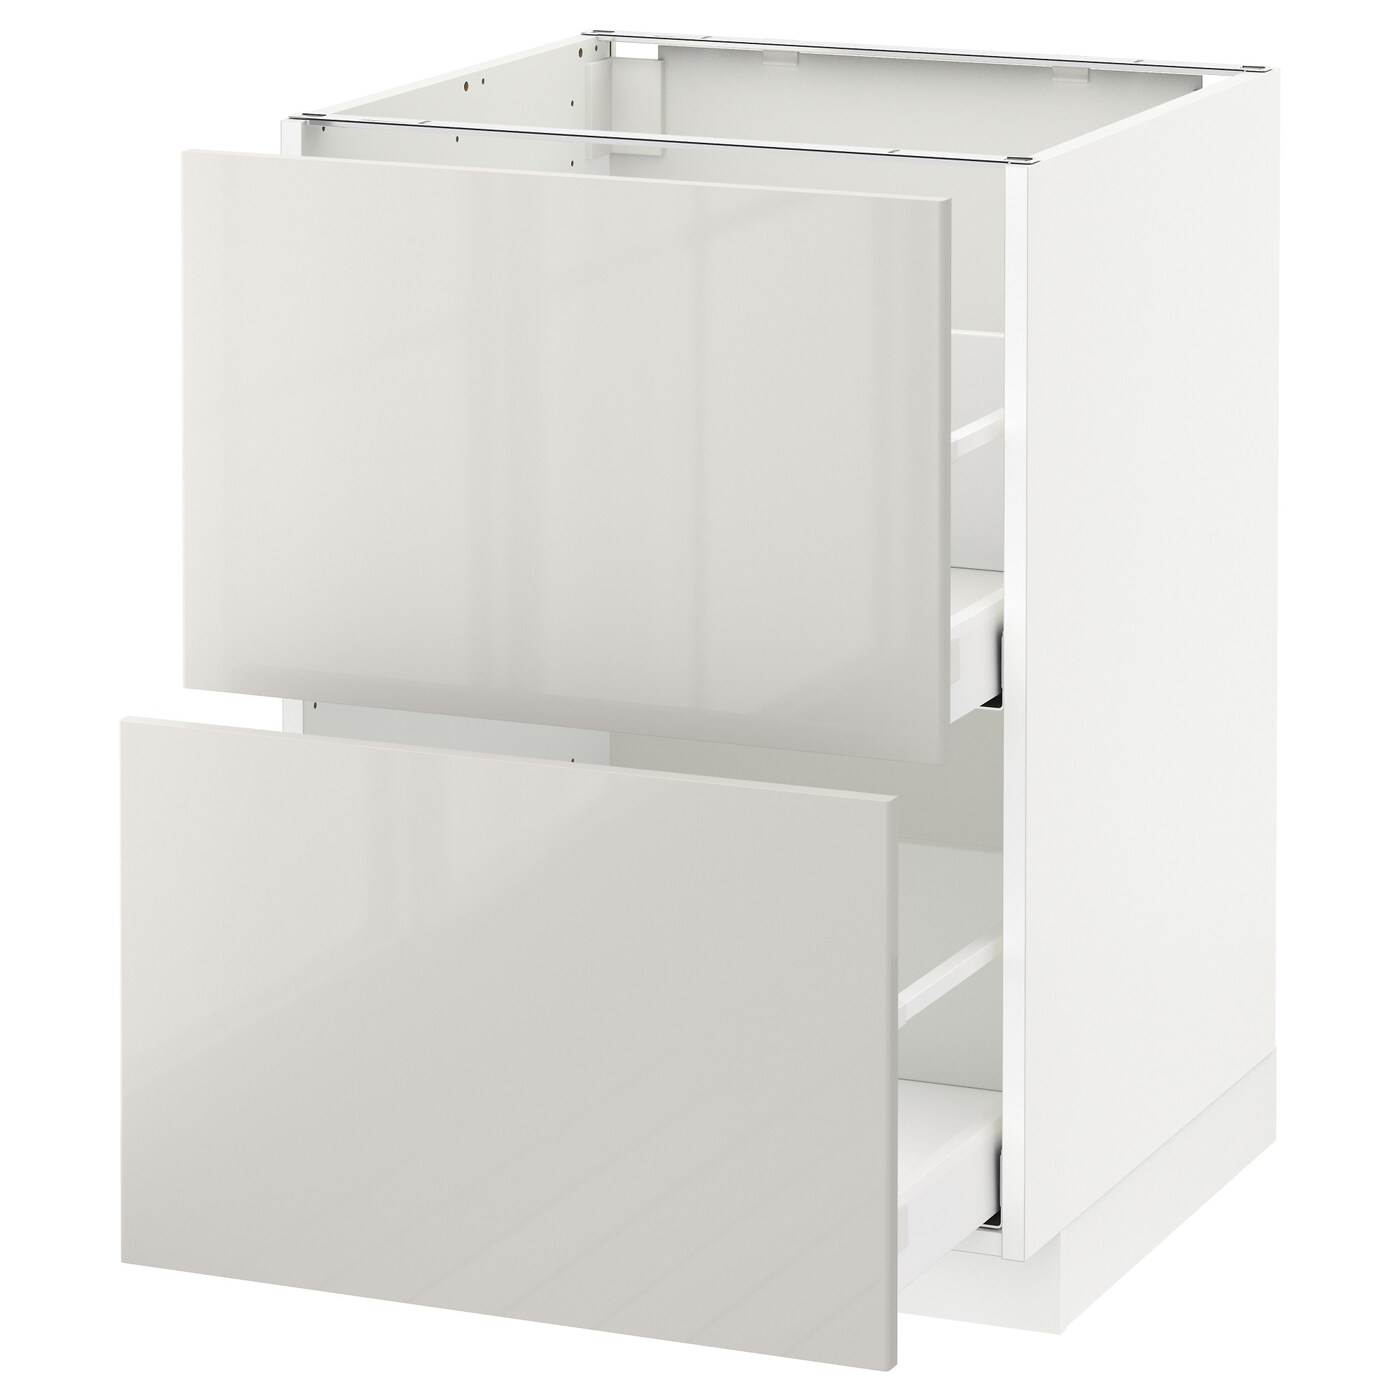 Напольный кухонный шкаф  - IKEA METOD MAXIMERA, 88x62x60см, белый/светло-серый, МЕТОД МАКСИМЕРА ИКЕА